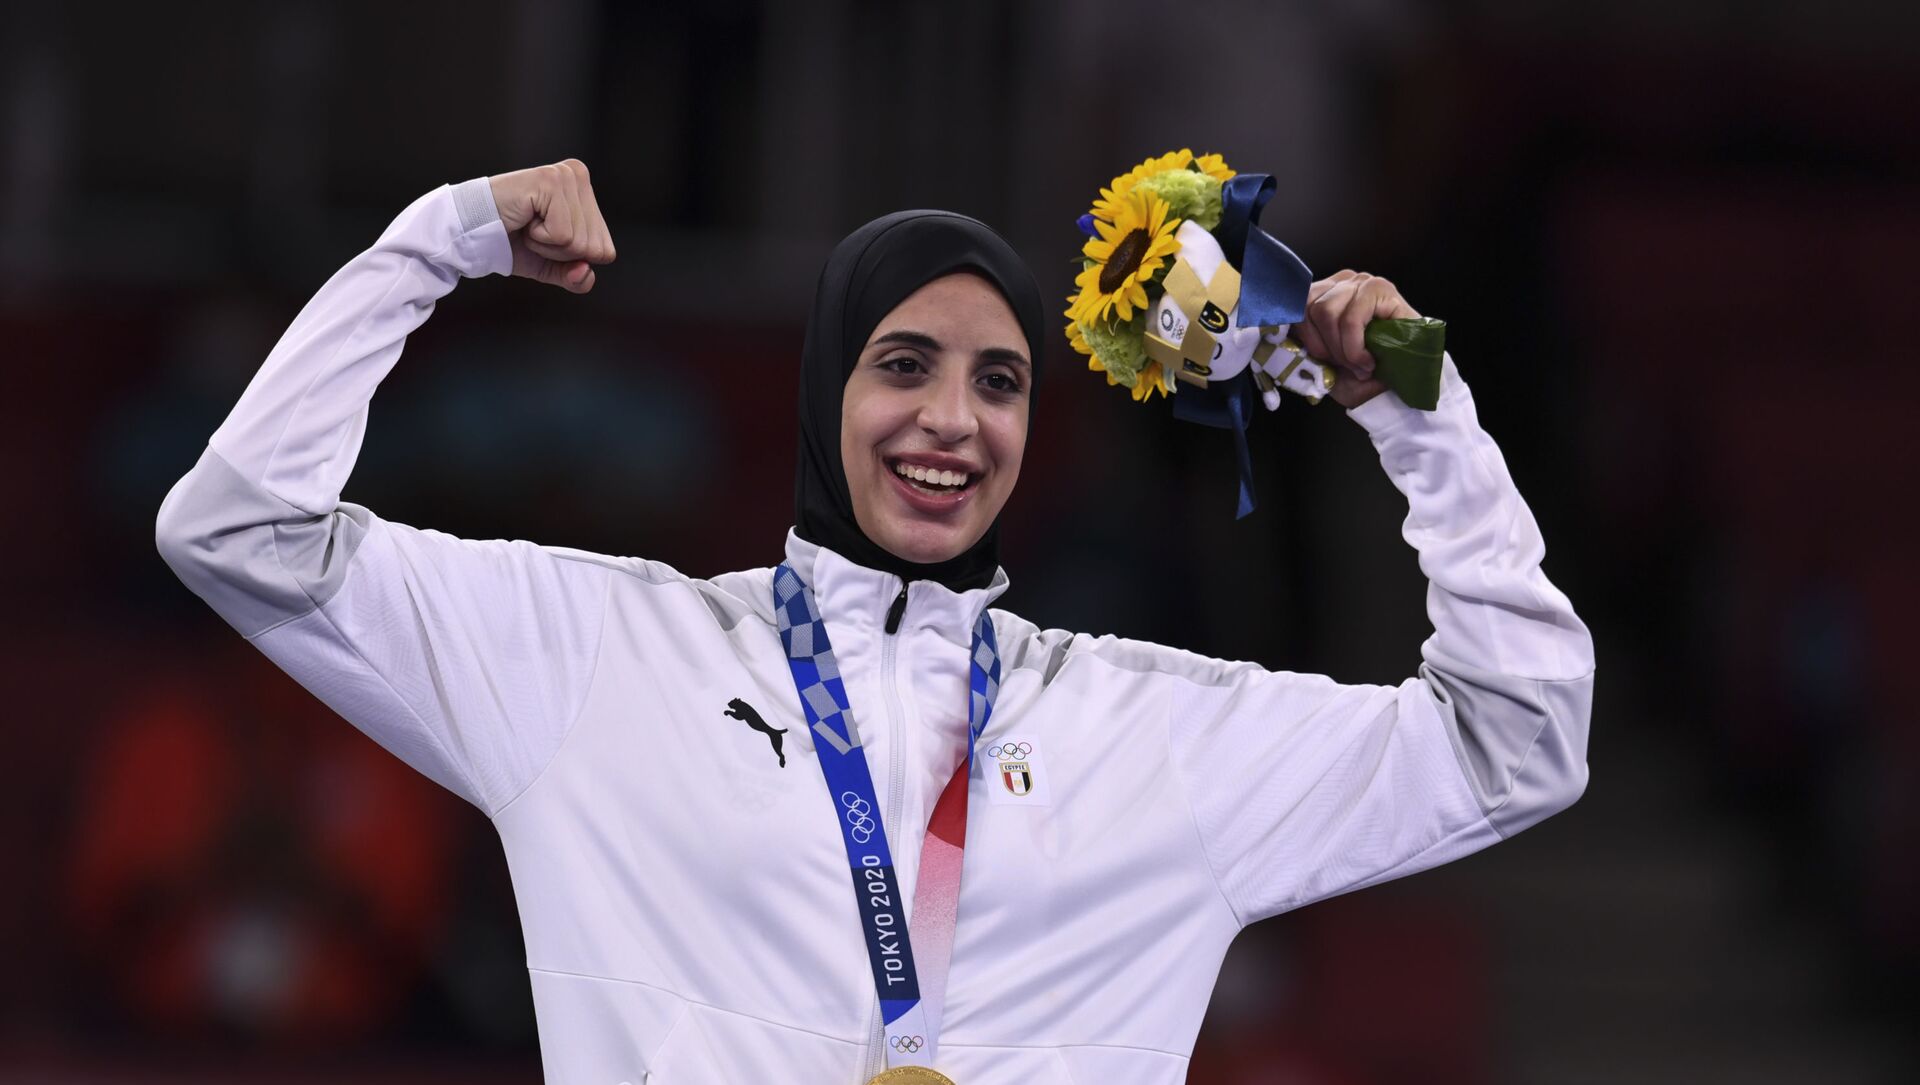 البطلة المصرية فريال أشرف بعد حصولها على الميدالية الذهبية للكاراتيه في أولمبياد طوكيو 2020 - سبوتنيك عربي, 1920, 21.11.2021